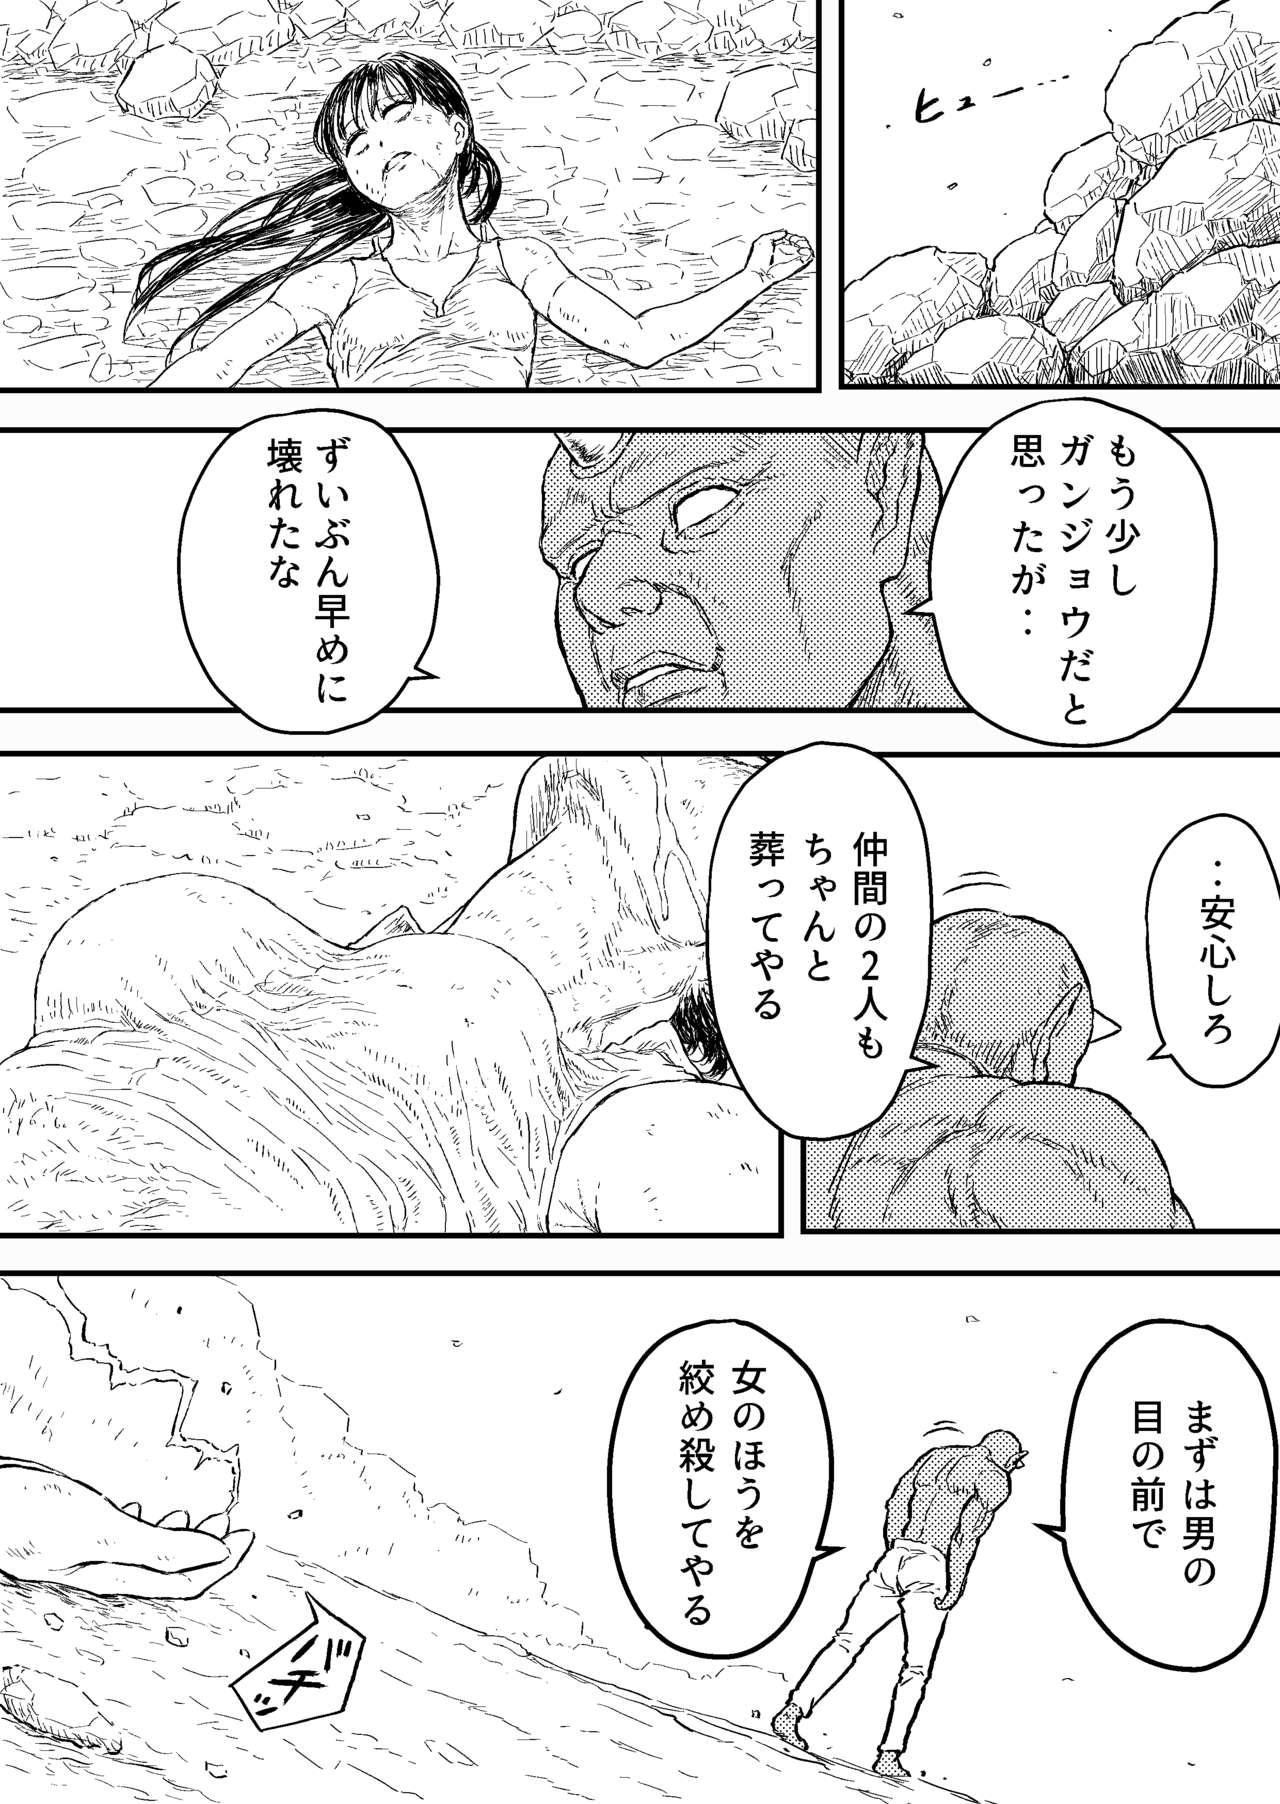 Edging Sutoranguru Gold 4 『Seigi no hiroin kosatsu subete o kake te tataka ta shojo no unmei』 - Original Ass Licking - Page 2